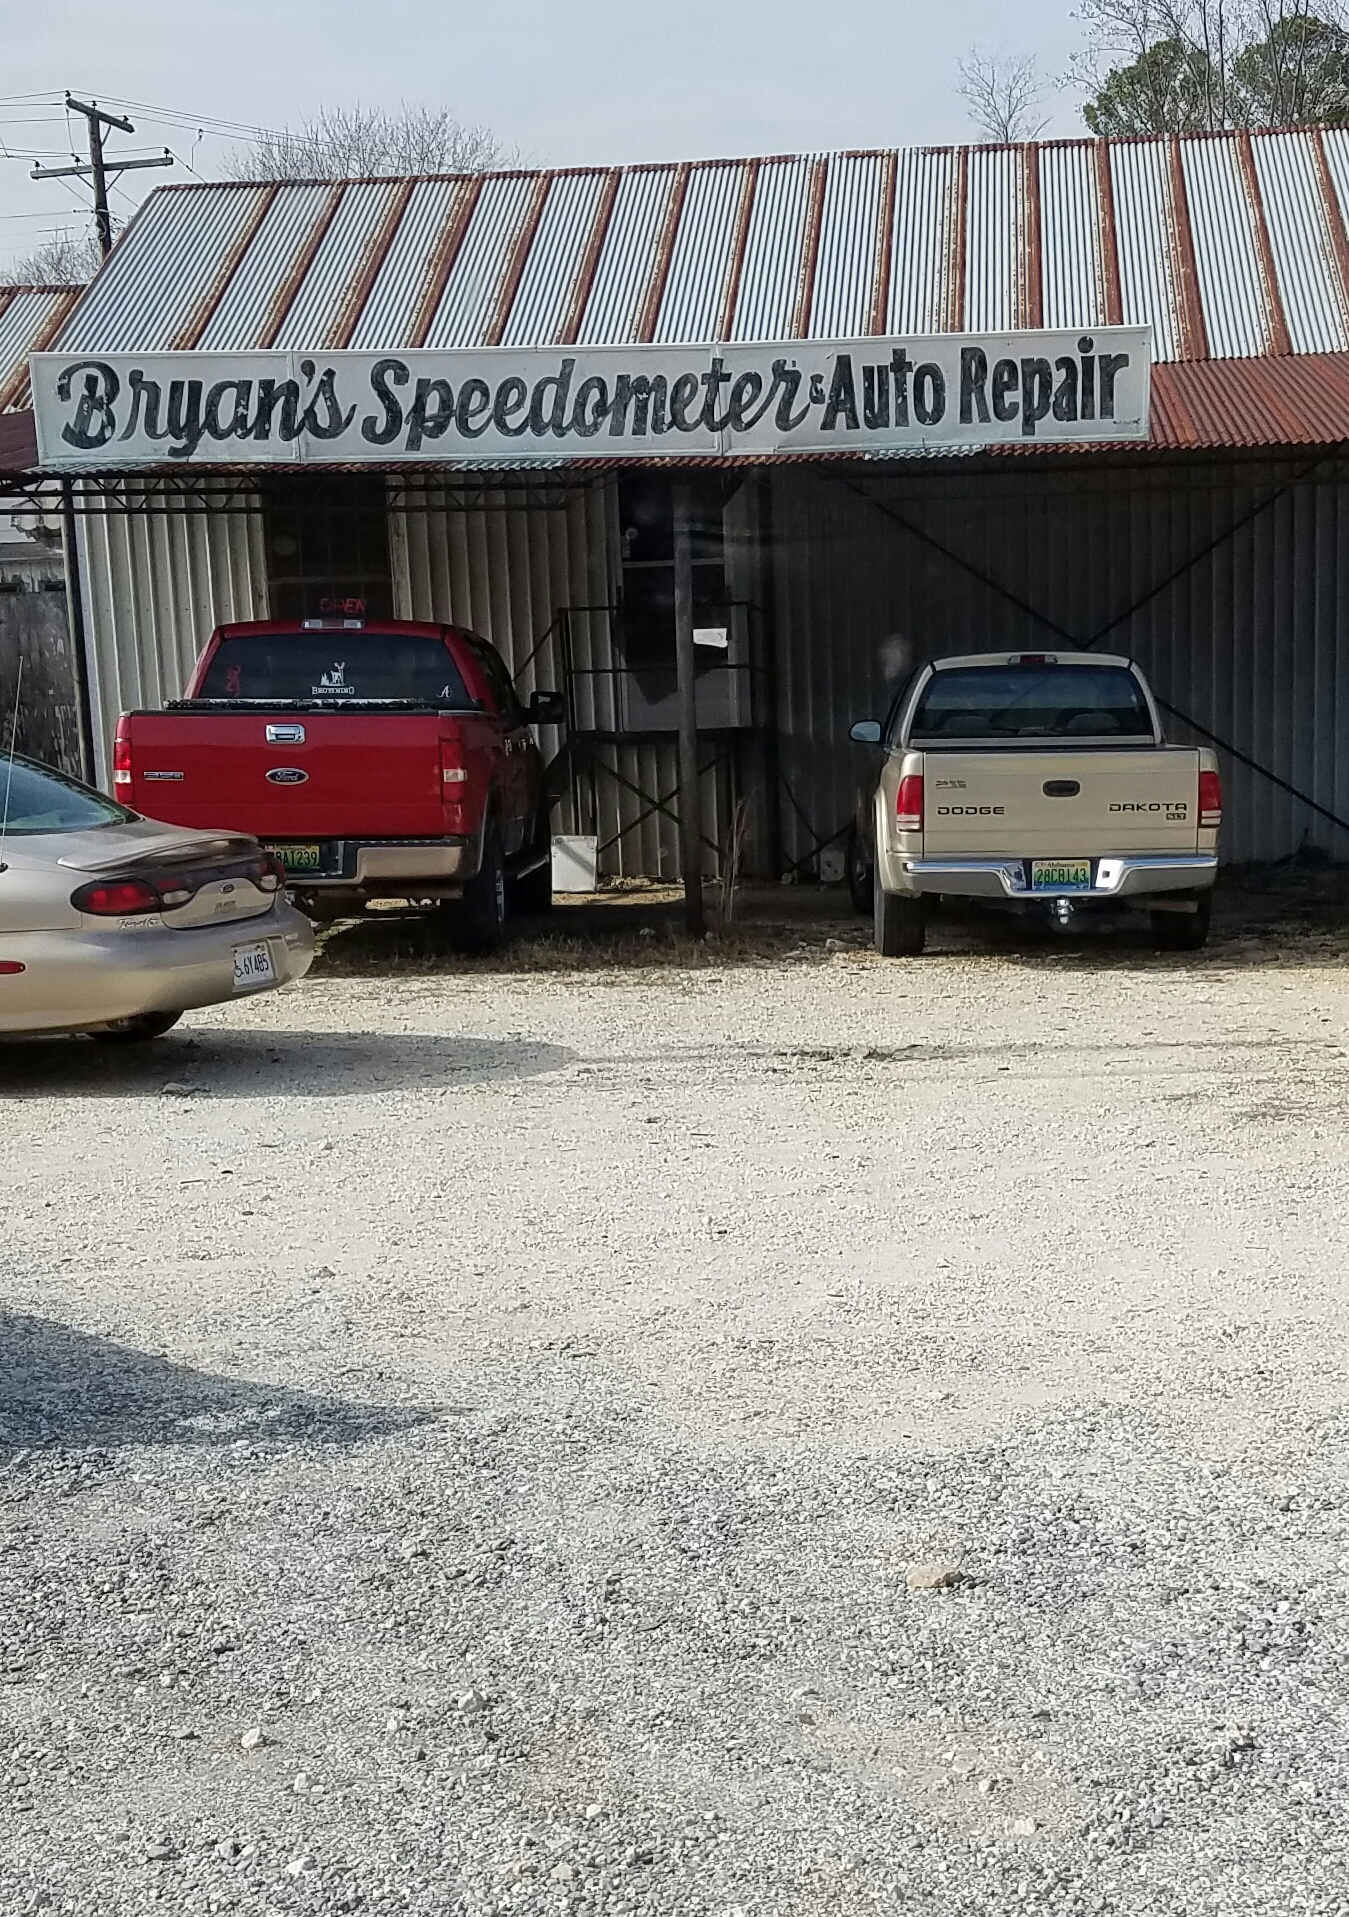 Bryan's Speedometer & Auto Repair